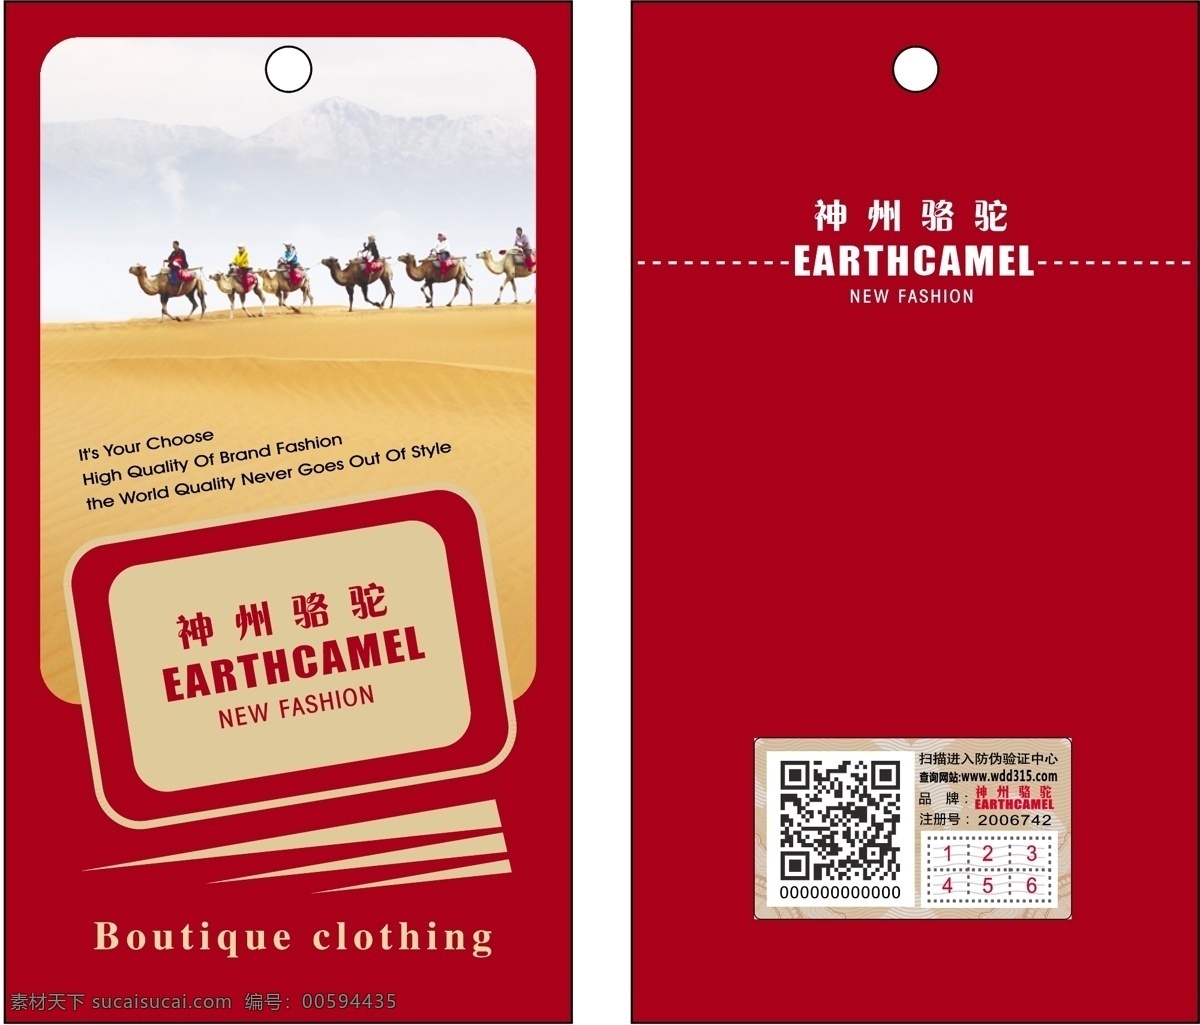 服装 吊牌 服装吊牌 神州骆驼 户外商标 原创设计 其他原创设计